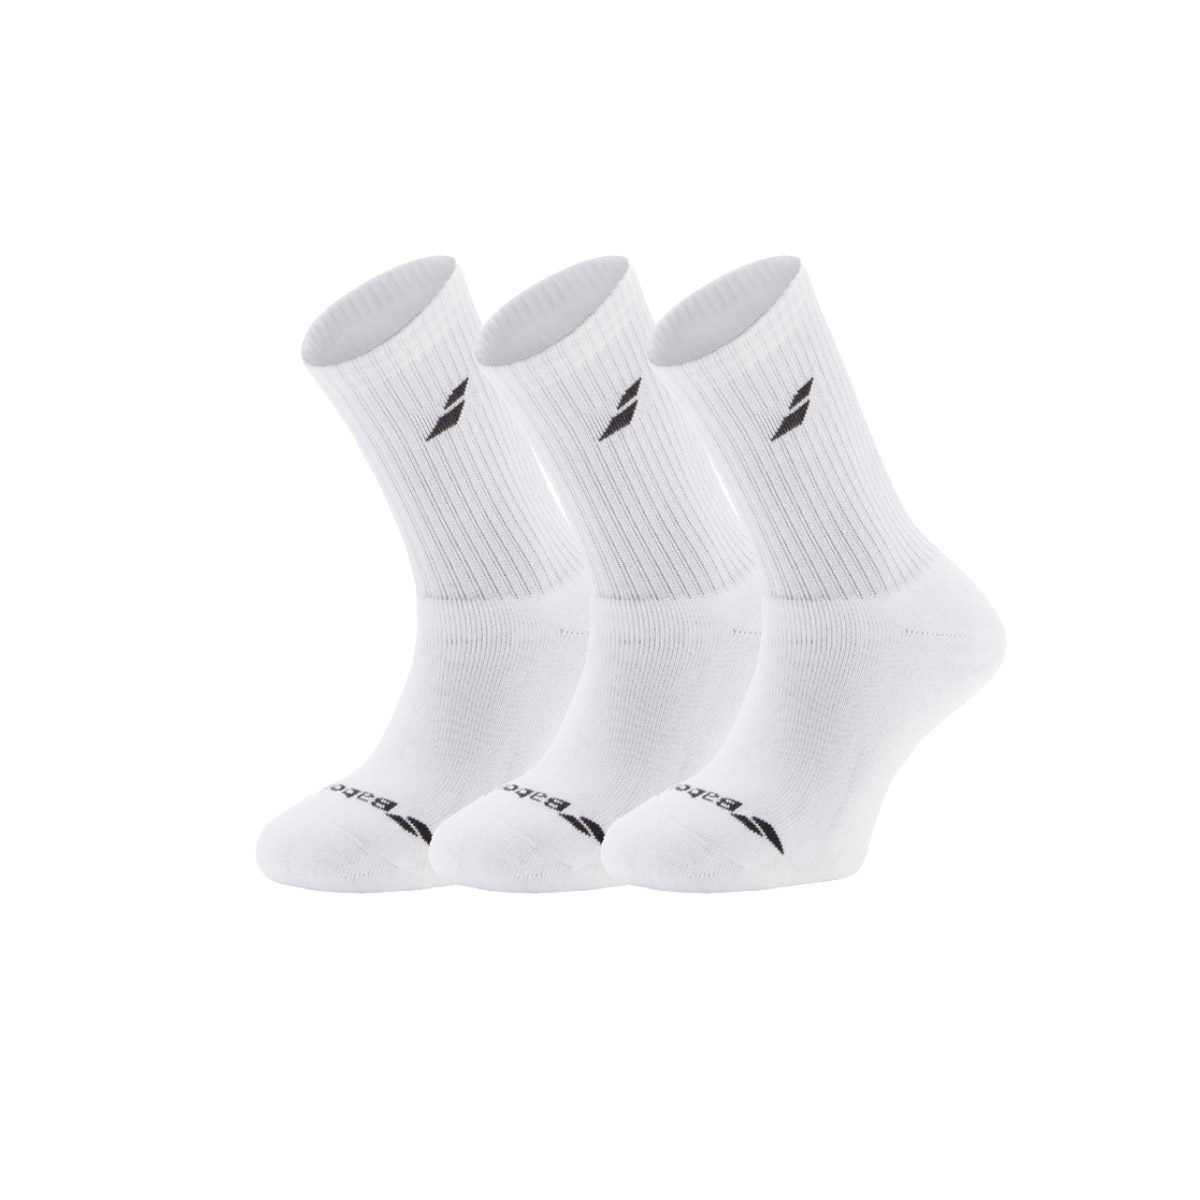 Babolat 3 pack Men's Tennis Socks